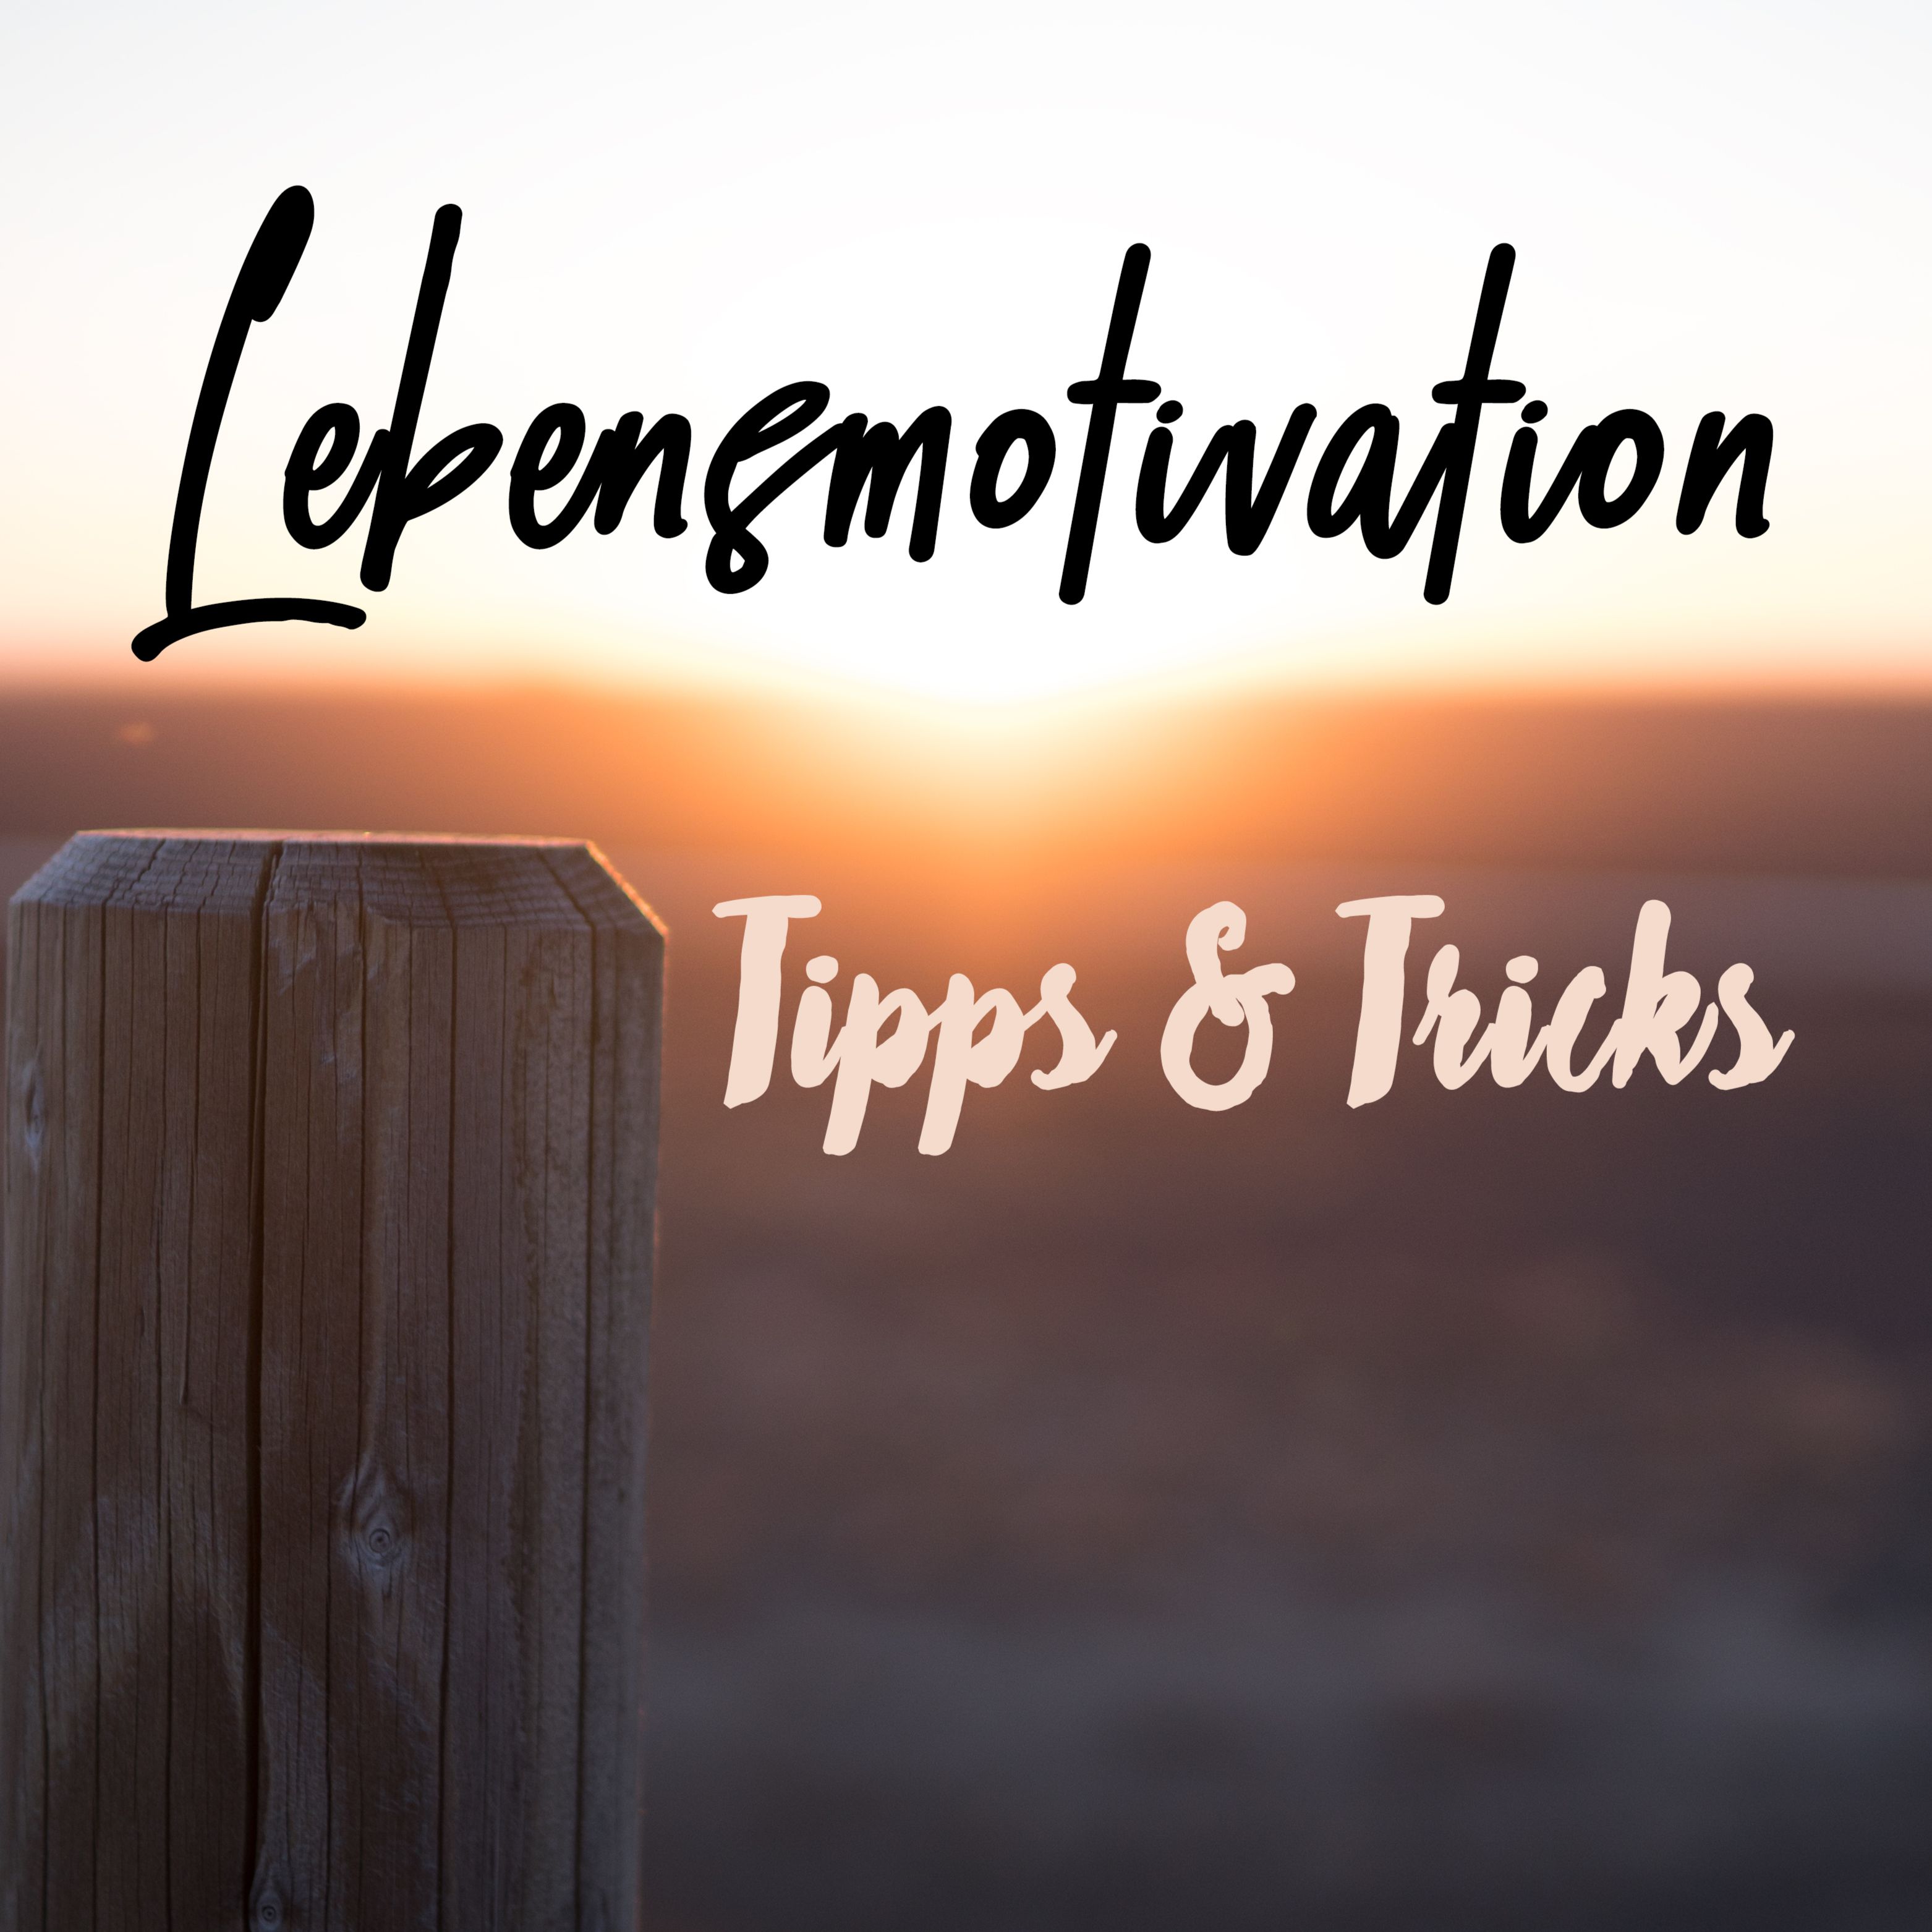 Lebensmotivation Tipps & Tricks Von Uns #1